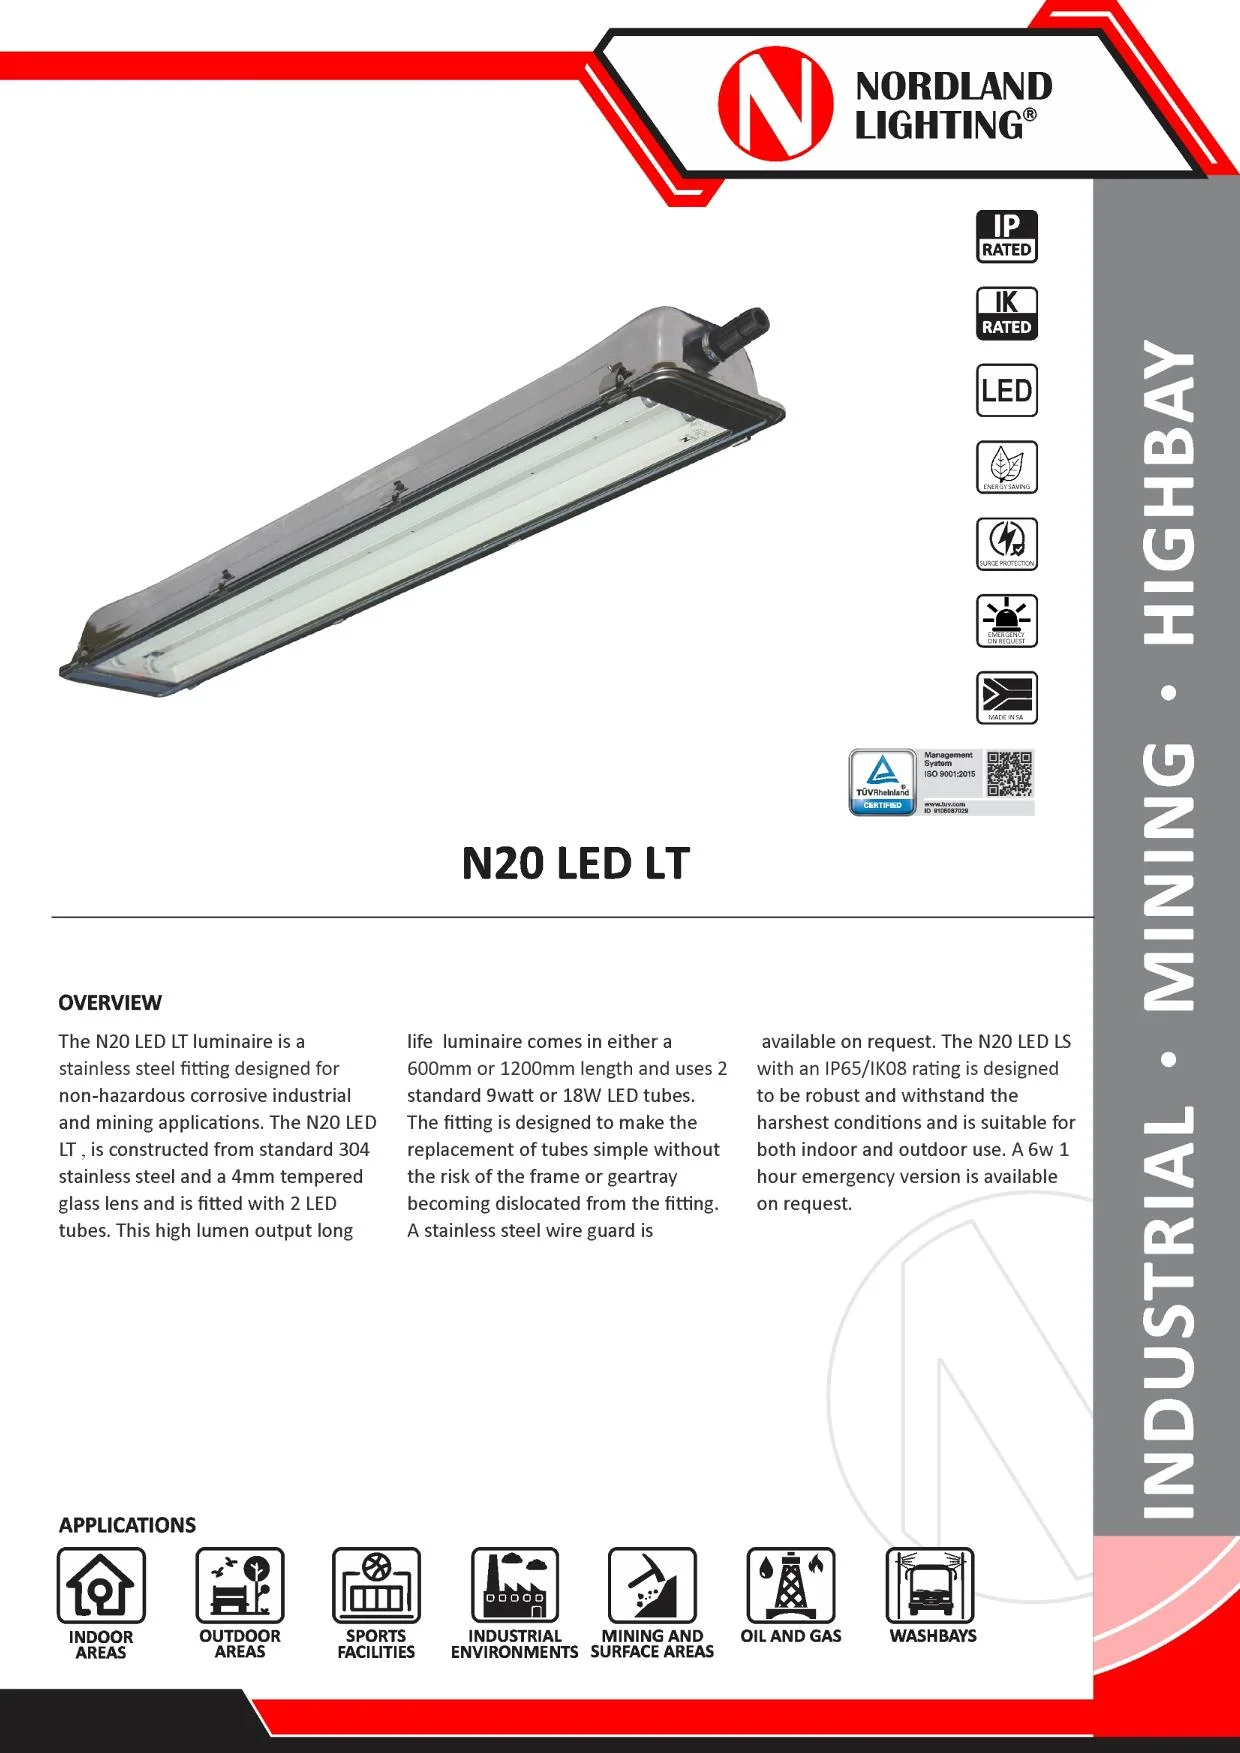 NL45 Nordland N20-LED LT Stainless Steel Luminaire